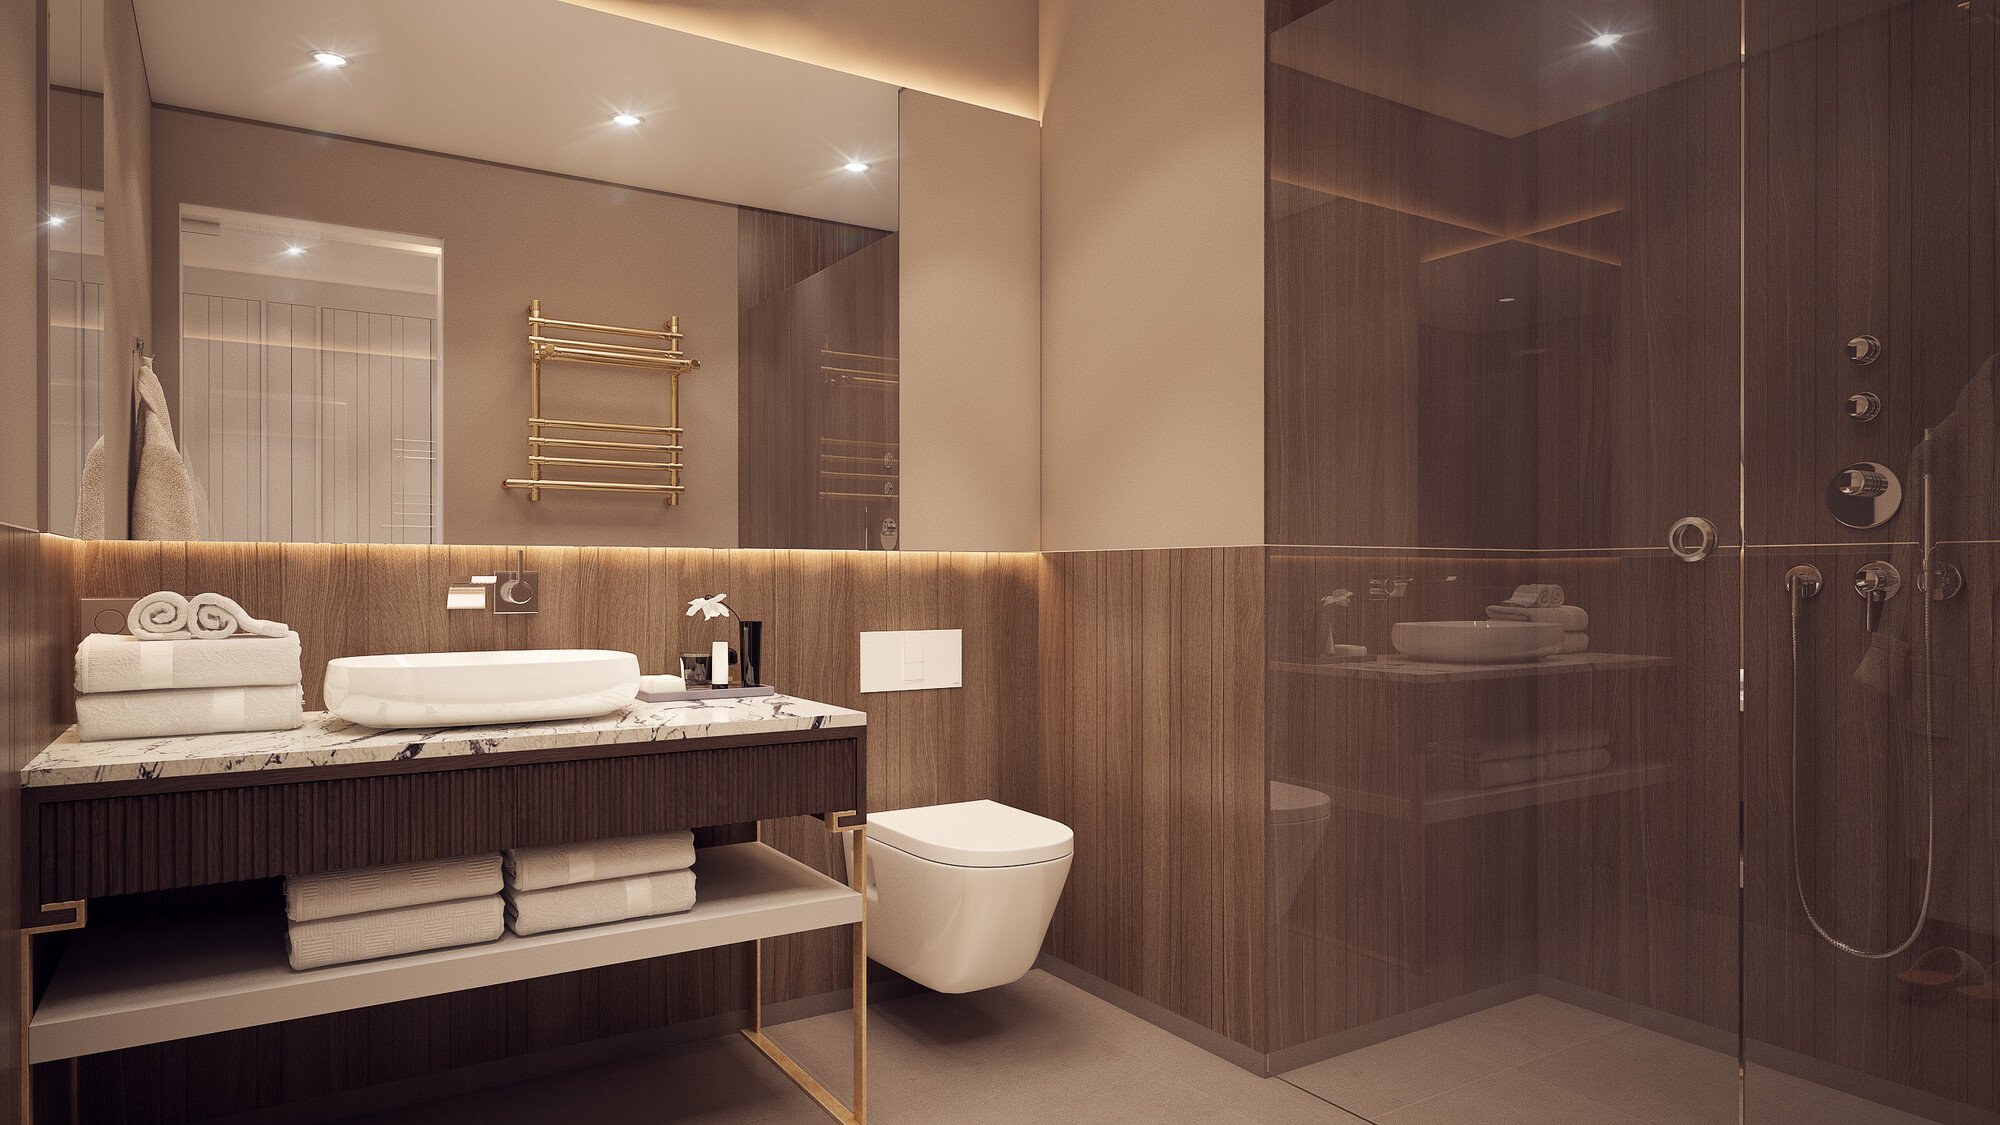 Affordable Online Bathroom Design interior design